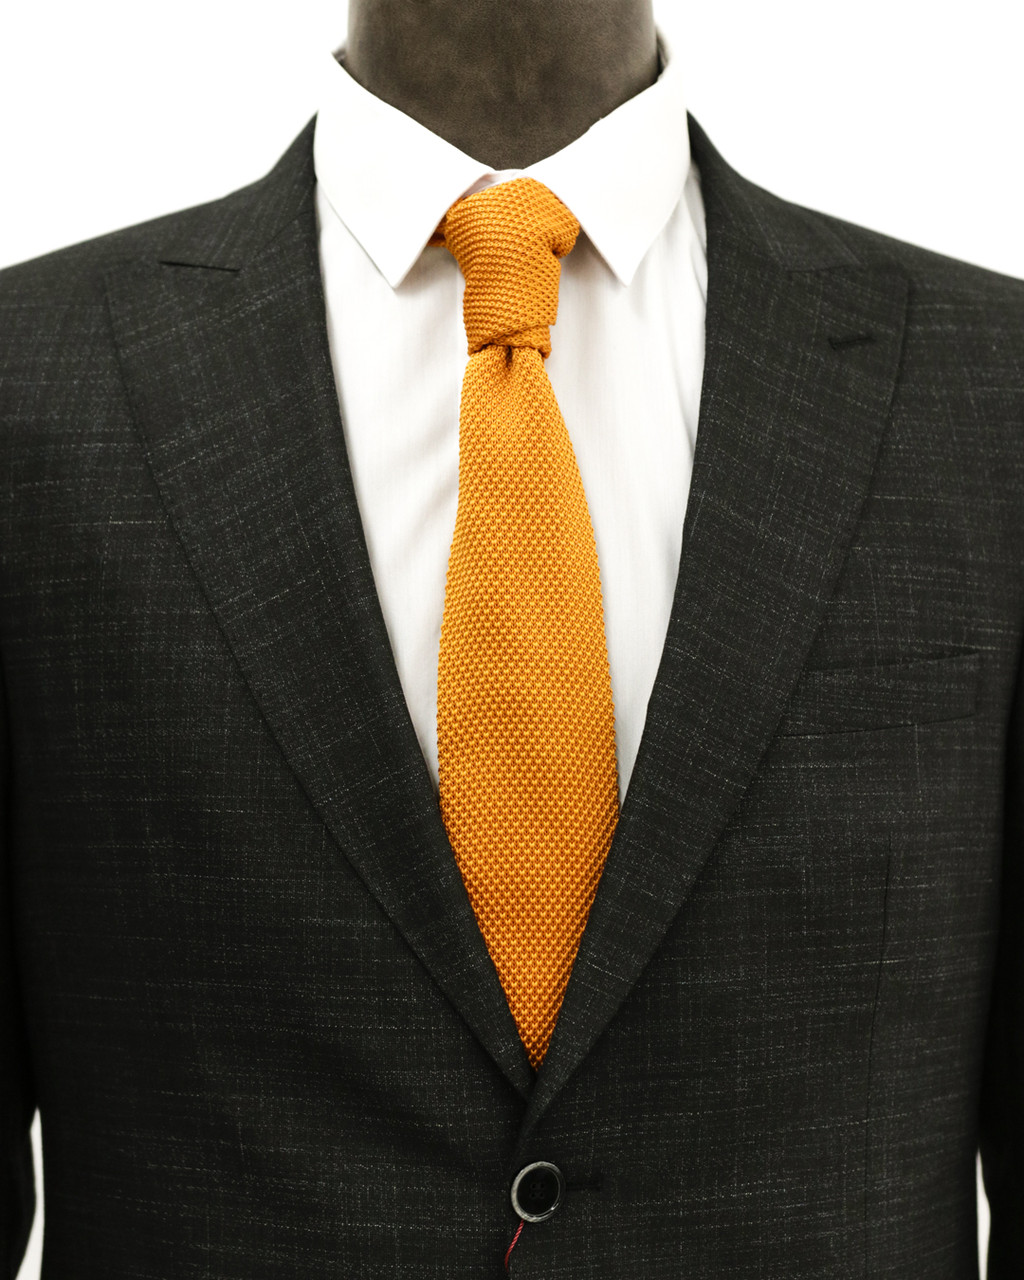 Мужской галстук «UM&H jrs15» оранжевый (полиэстер), фото 1